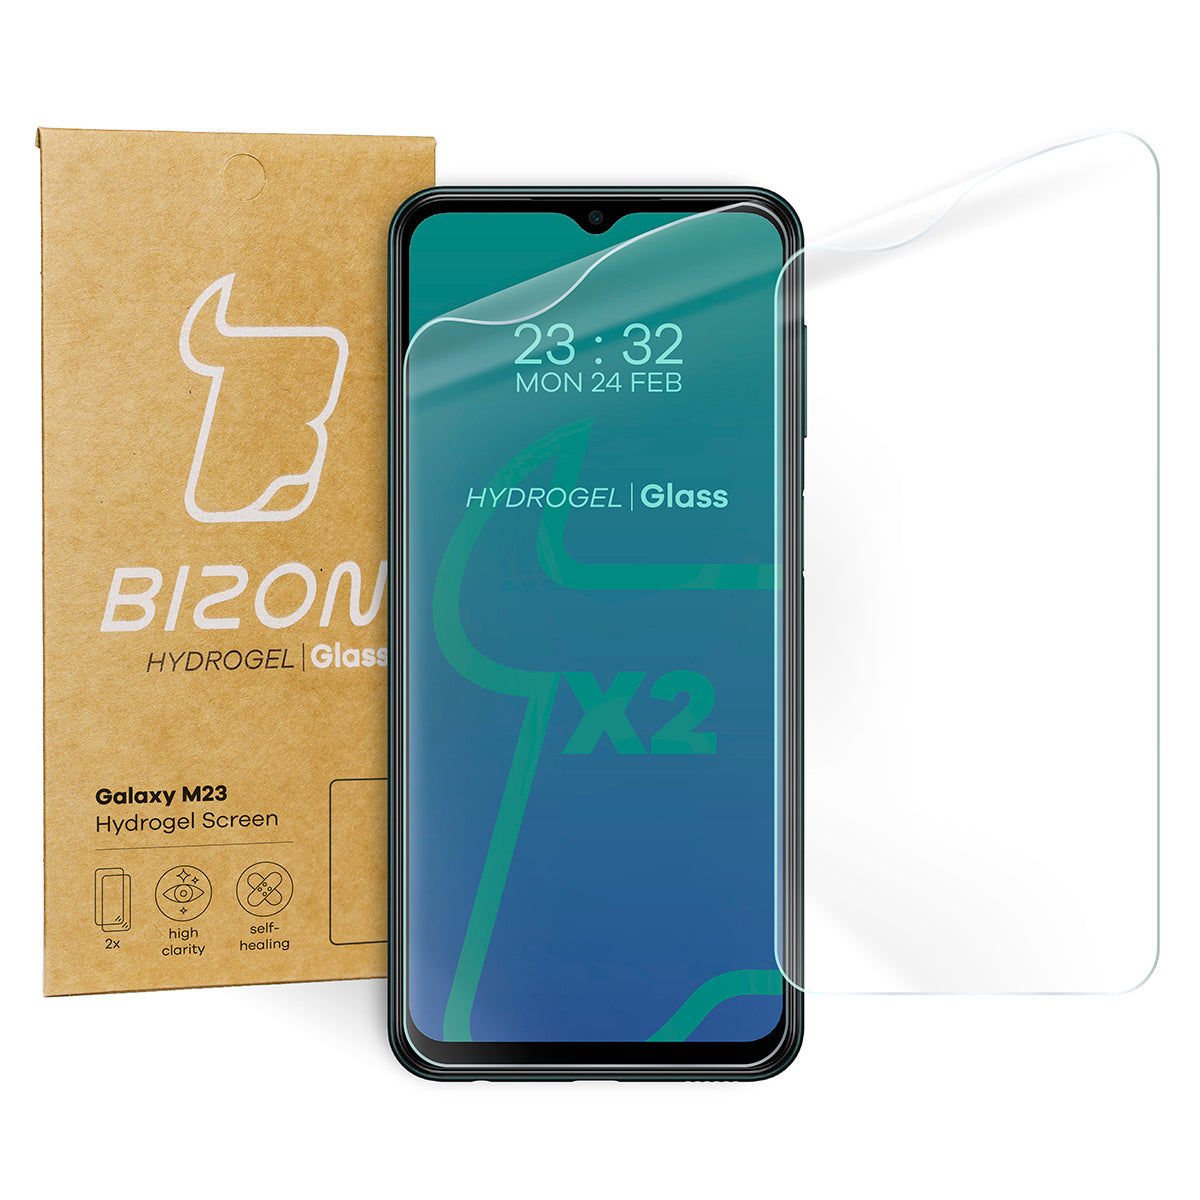 Hydrogel Folie für den Bildschirm Bizon Glass Hydrogel, Galaxy M13 / M23 5G, 2 Stück